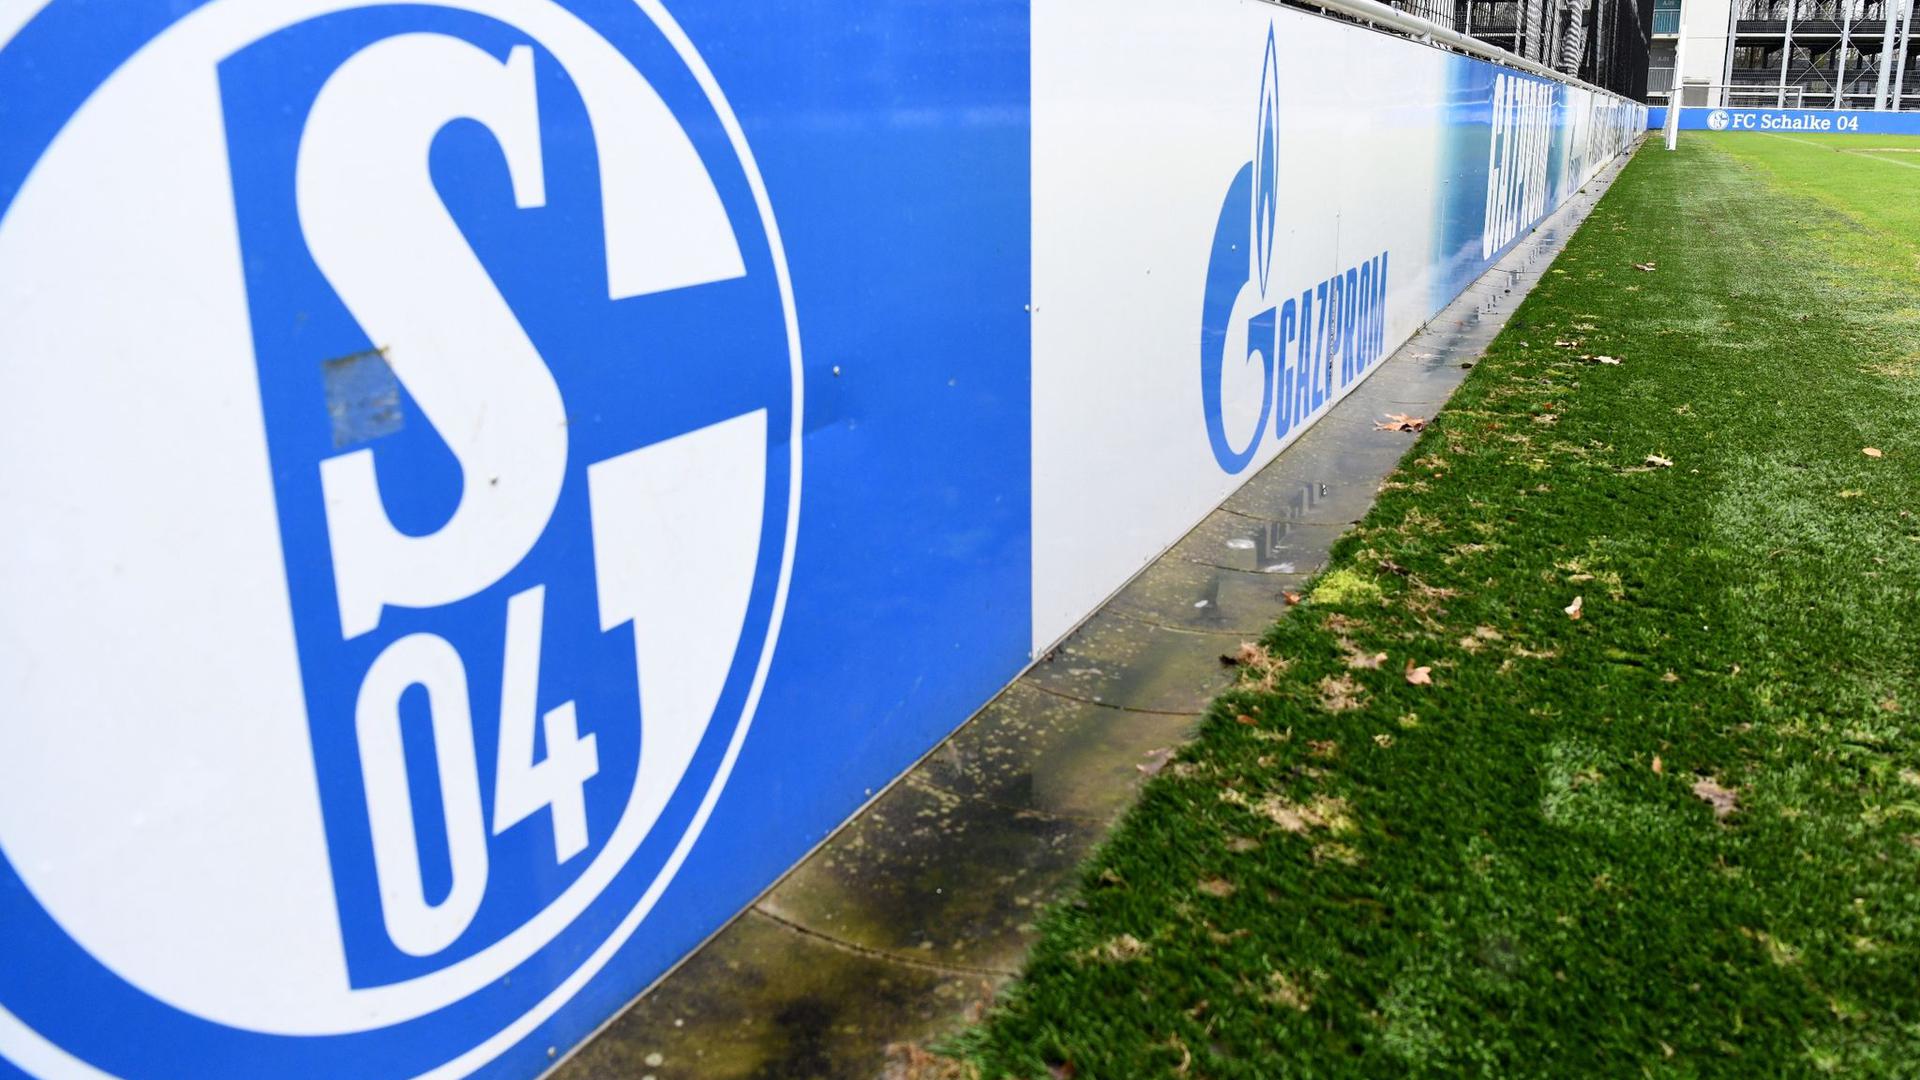 Der FC Schalke 04 trennte sich von Sponsor Gazprom.